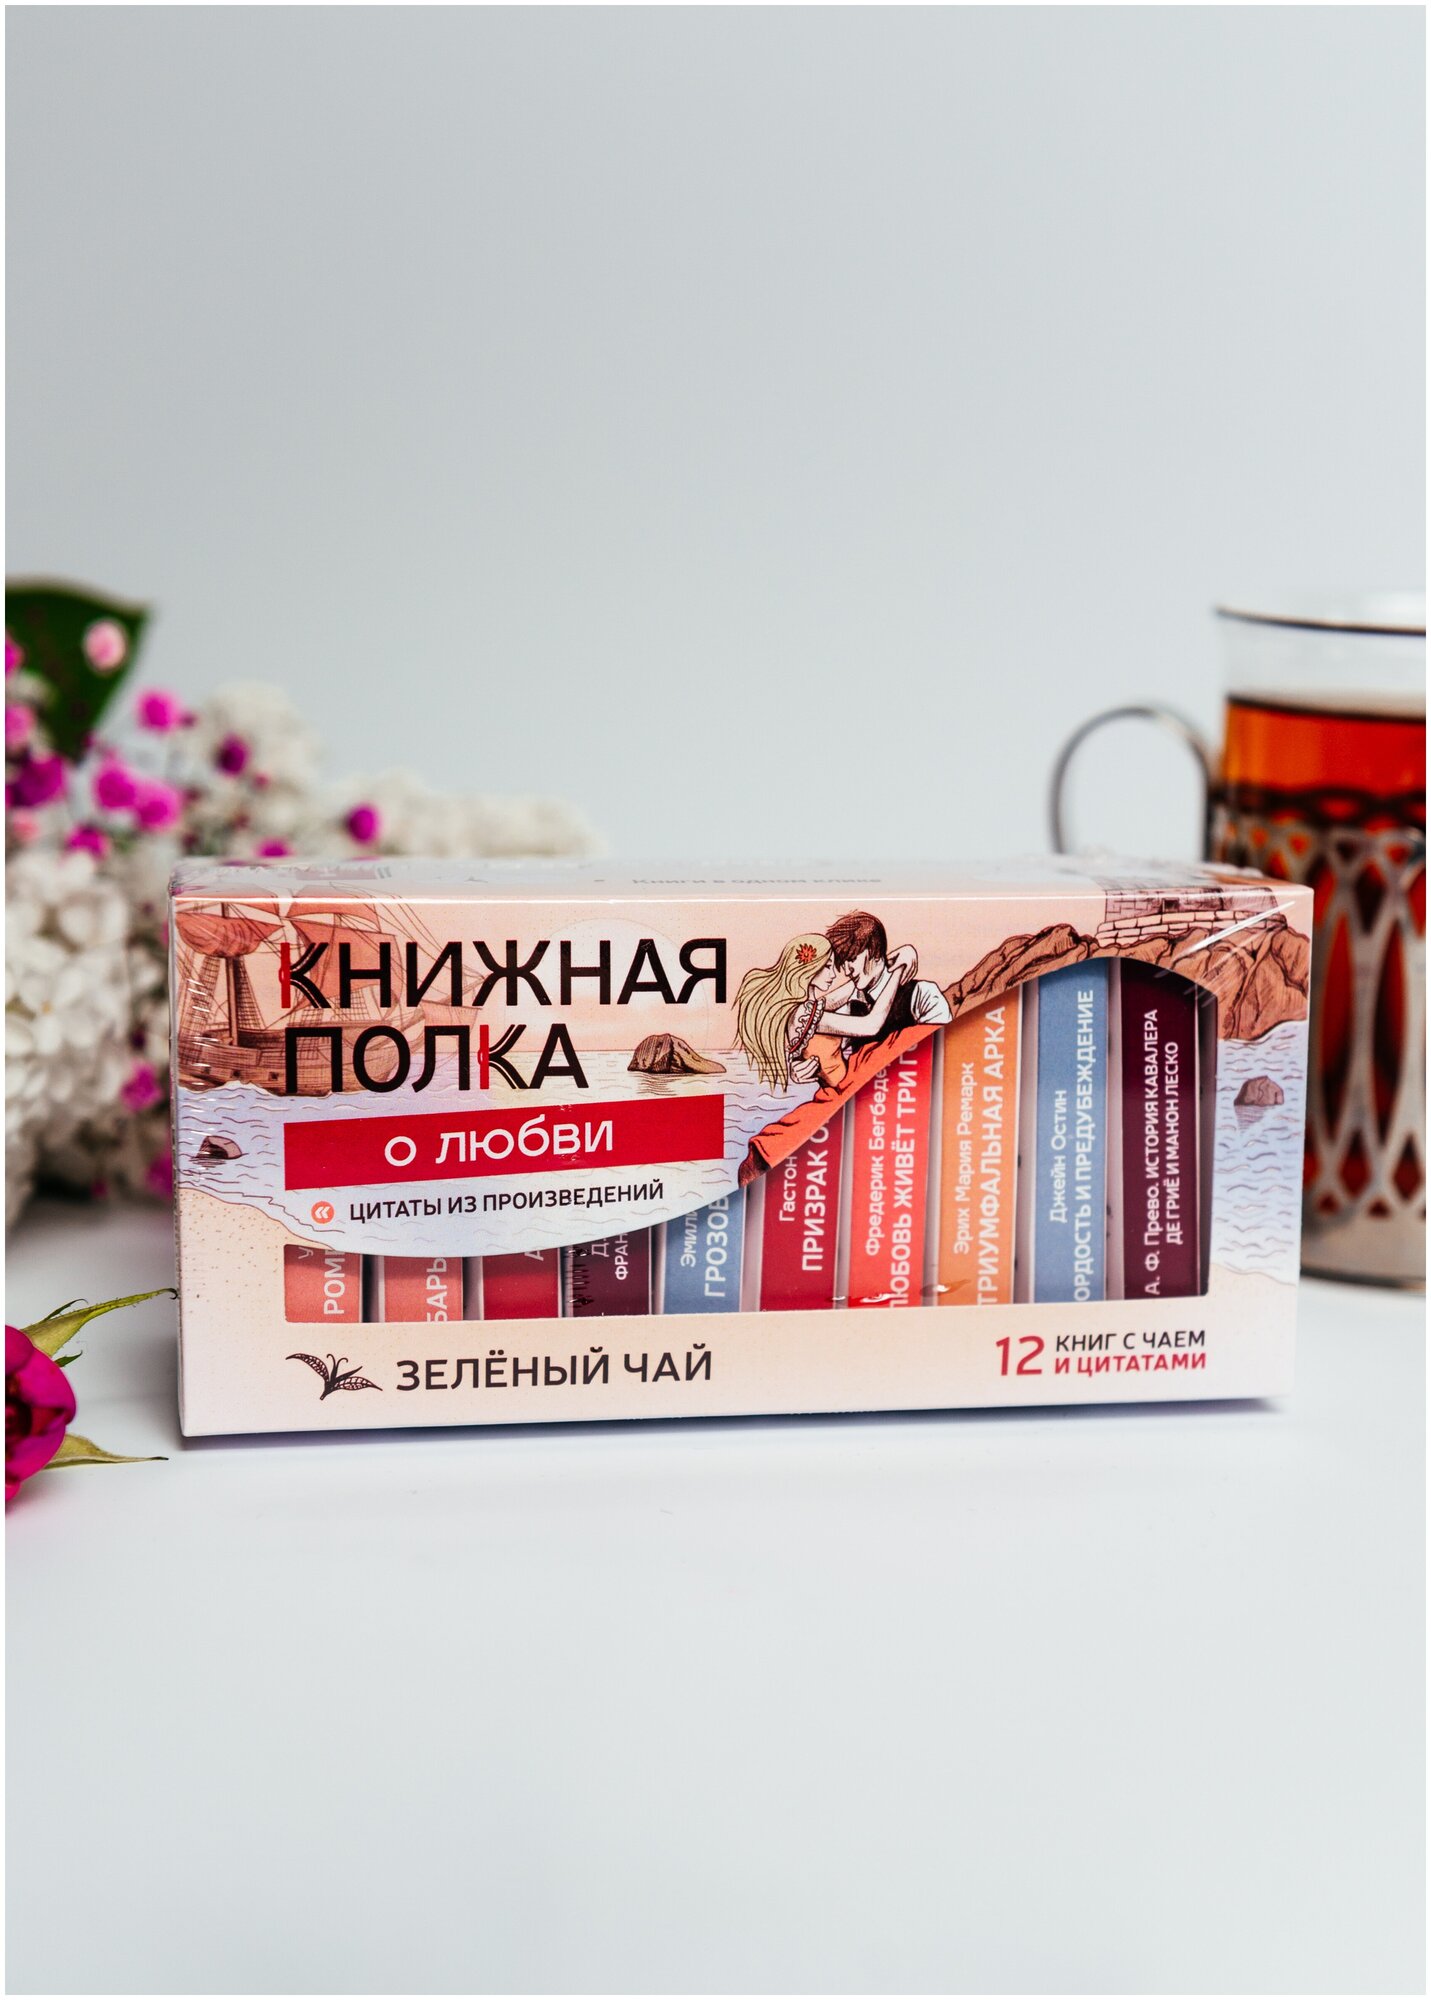 Книги в пачке чая "Книжная полка о Любви", чай подарочный зеленый - фотография № 2